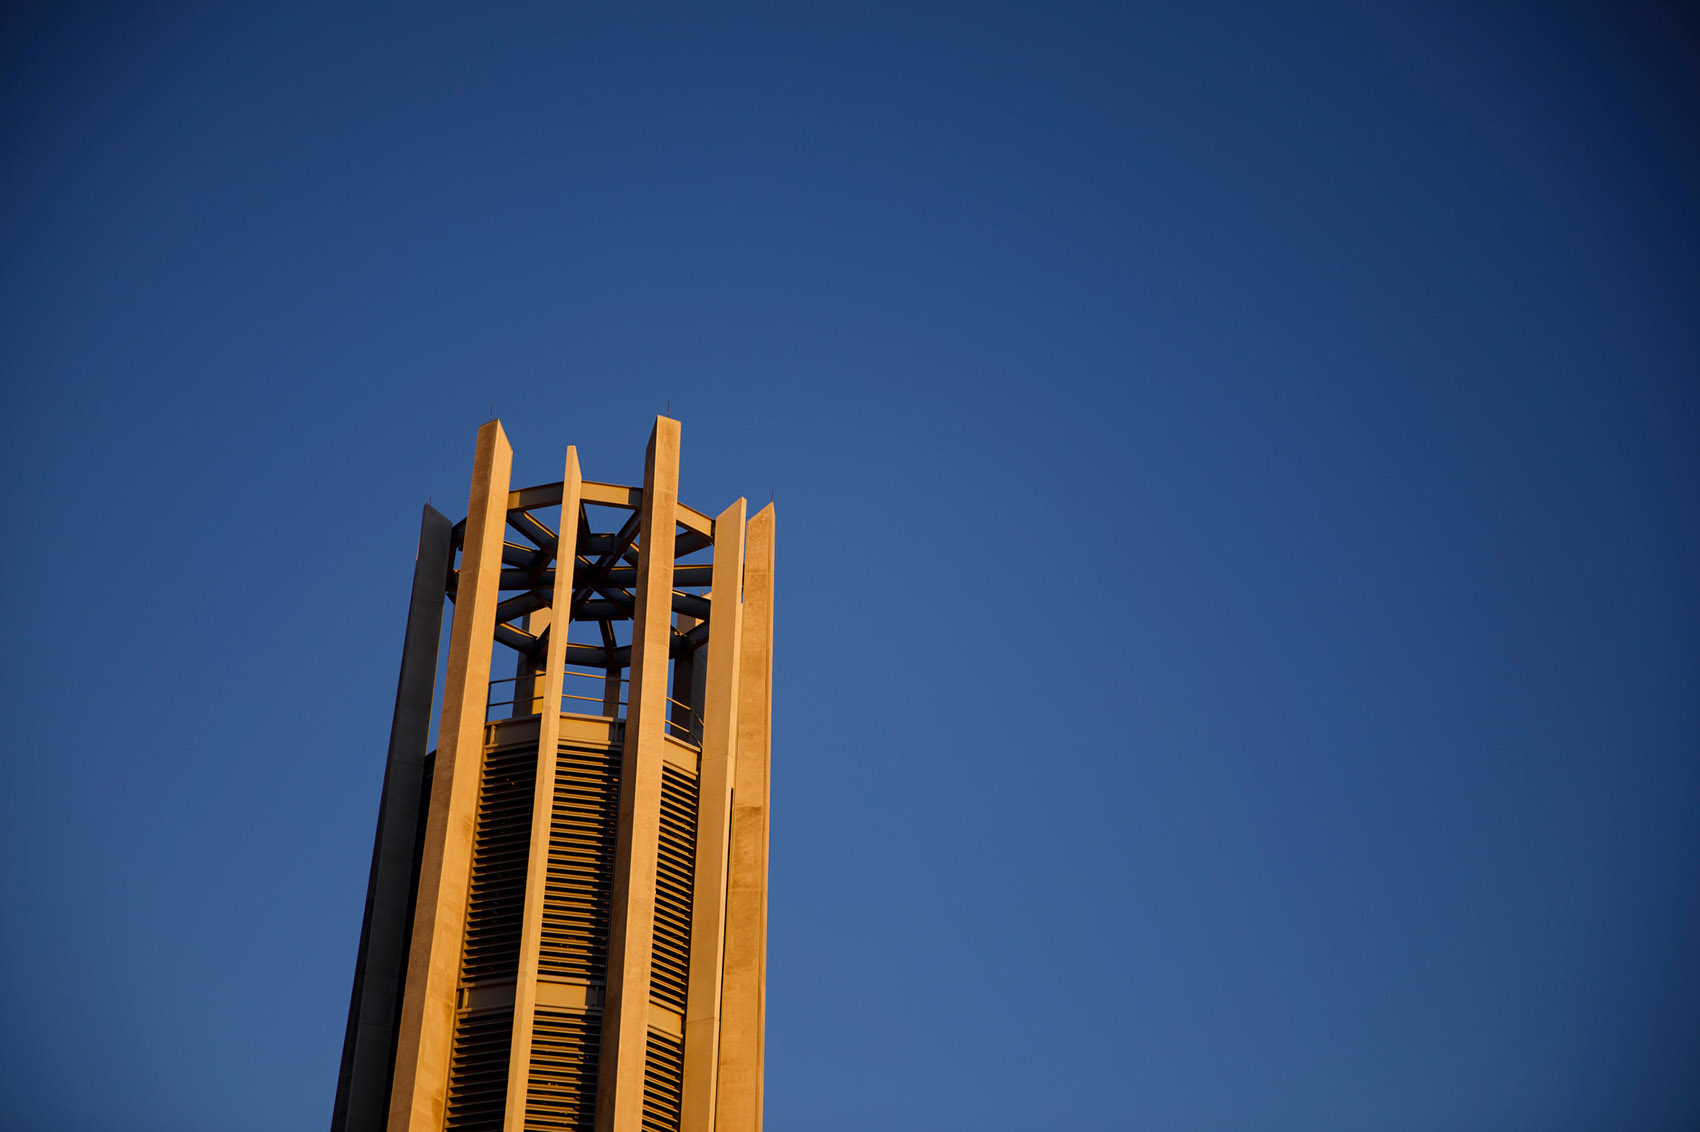 印第安纳大学钟琴塔，美国/印第安纳大学两百周年校庆的纪念钟塔-38